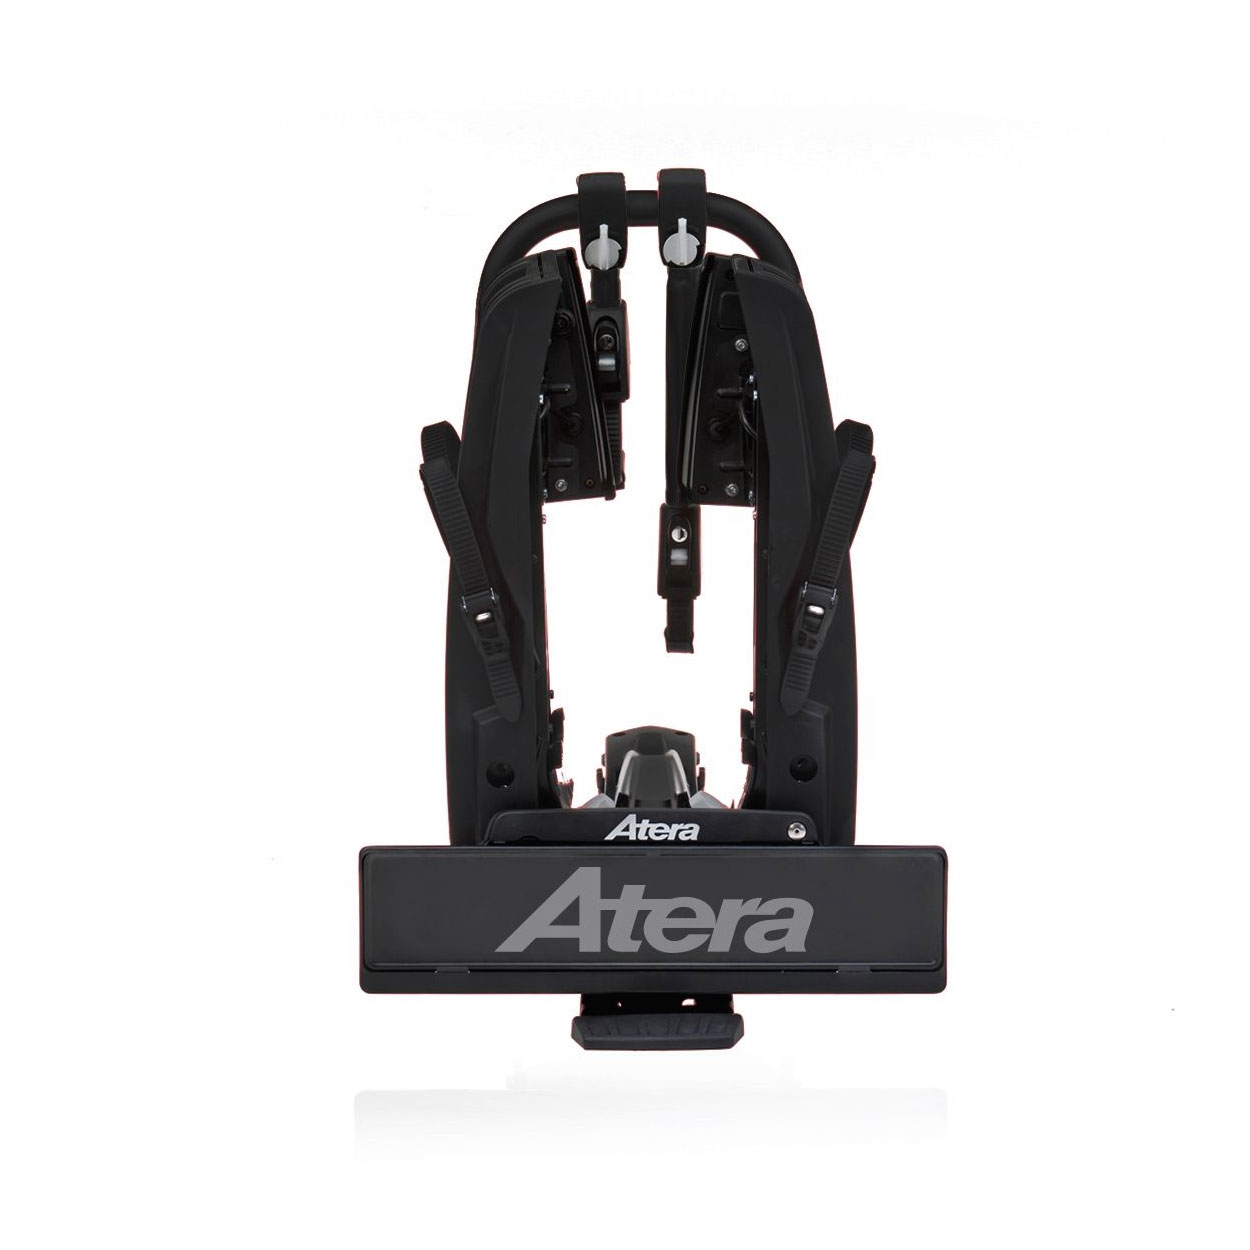 ATERA GENIO PRO Advanced 022785 Fahrradtraeger 2er Black Edition faltbar erweiterbar- Fahrradtraeger fuer die Anhaengerkupplung von ATERA aus dem Allgaeu